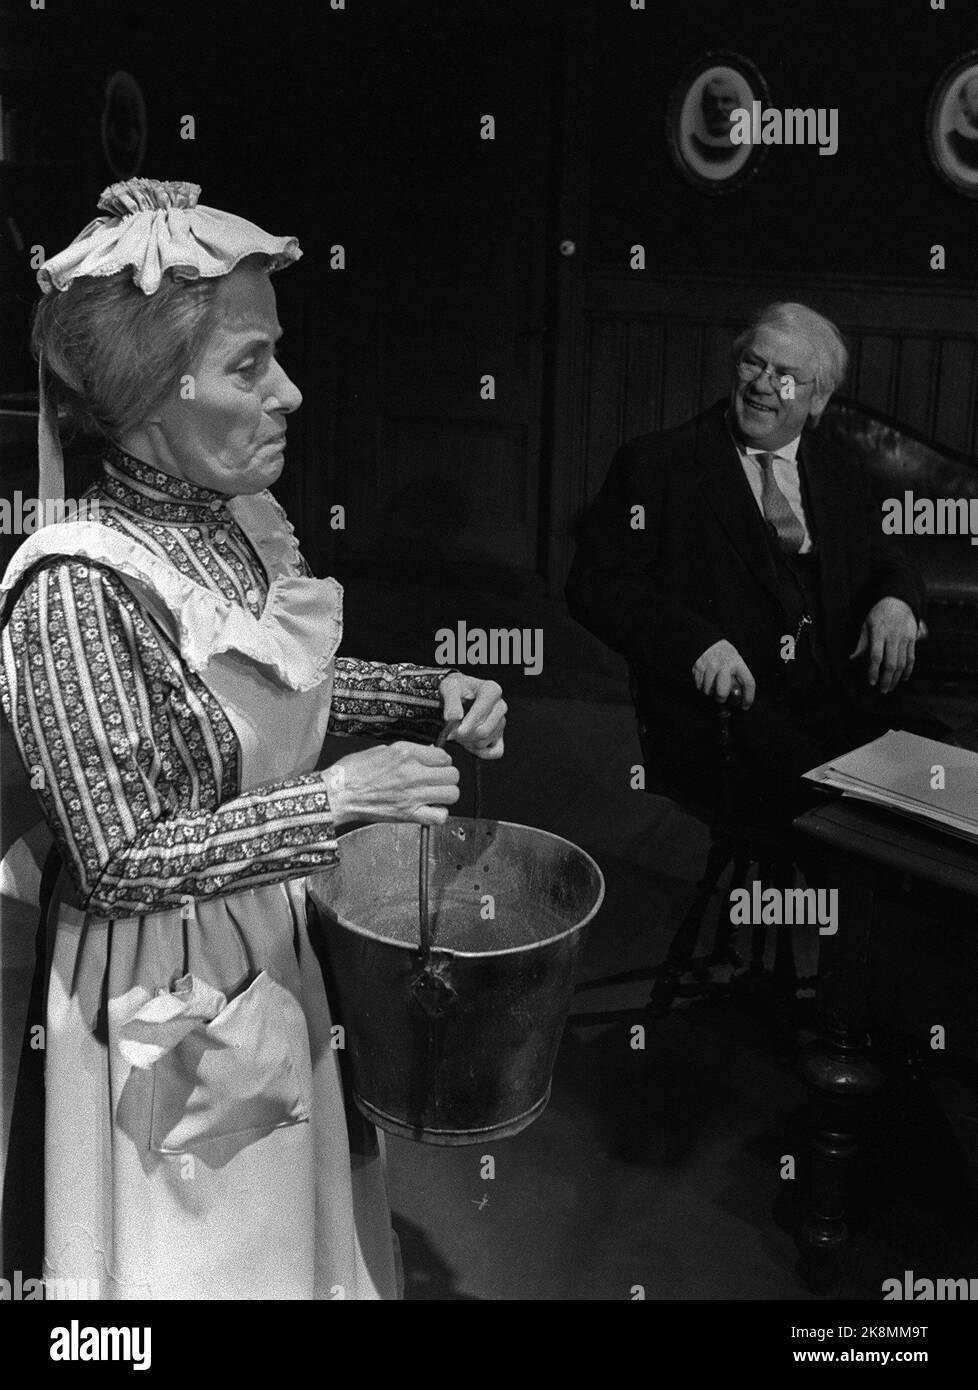 Oslo 19750203: Bild aus dem Stück 'die große Taufe' im Det Norske Theater. Hier sehen wir AUD Schønemann und Arve Opsahl, jeweils als Jungfrau Jahr und Kirchendienerin Evensen. Foto: Henrik Laurvik / NTB / NTB - - das Bild beträgt ca. 4 MB - - - Stockfoto